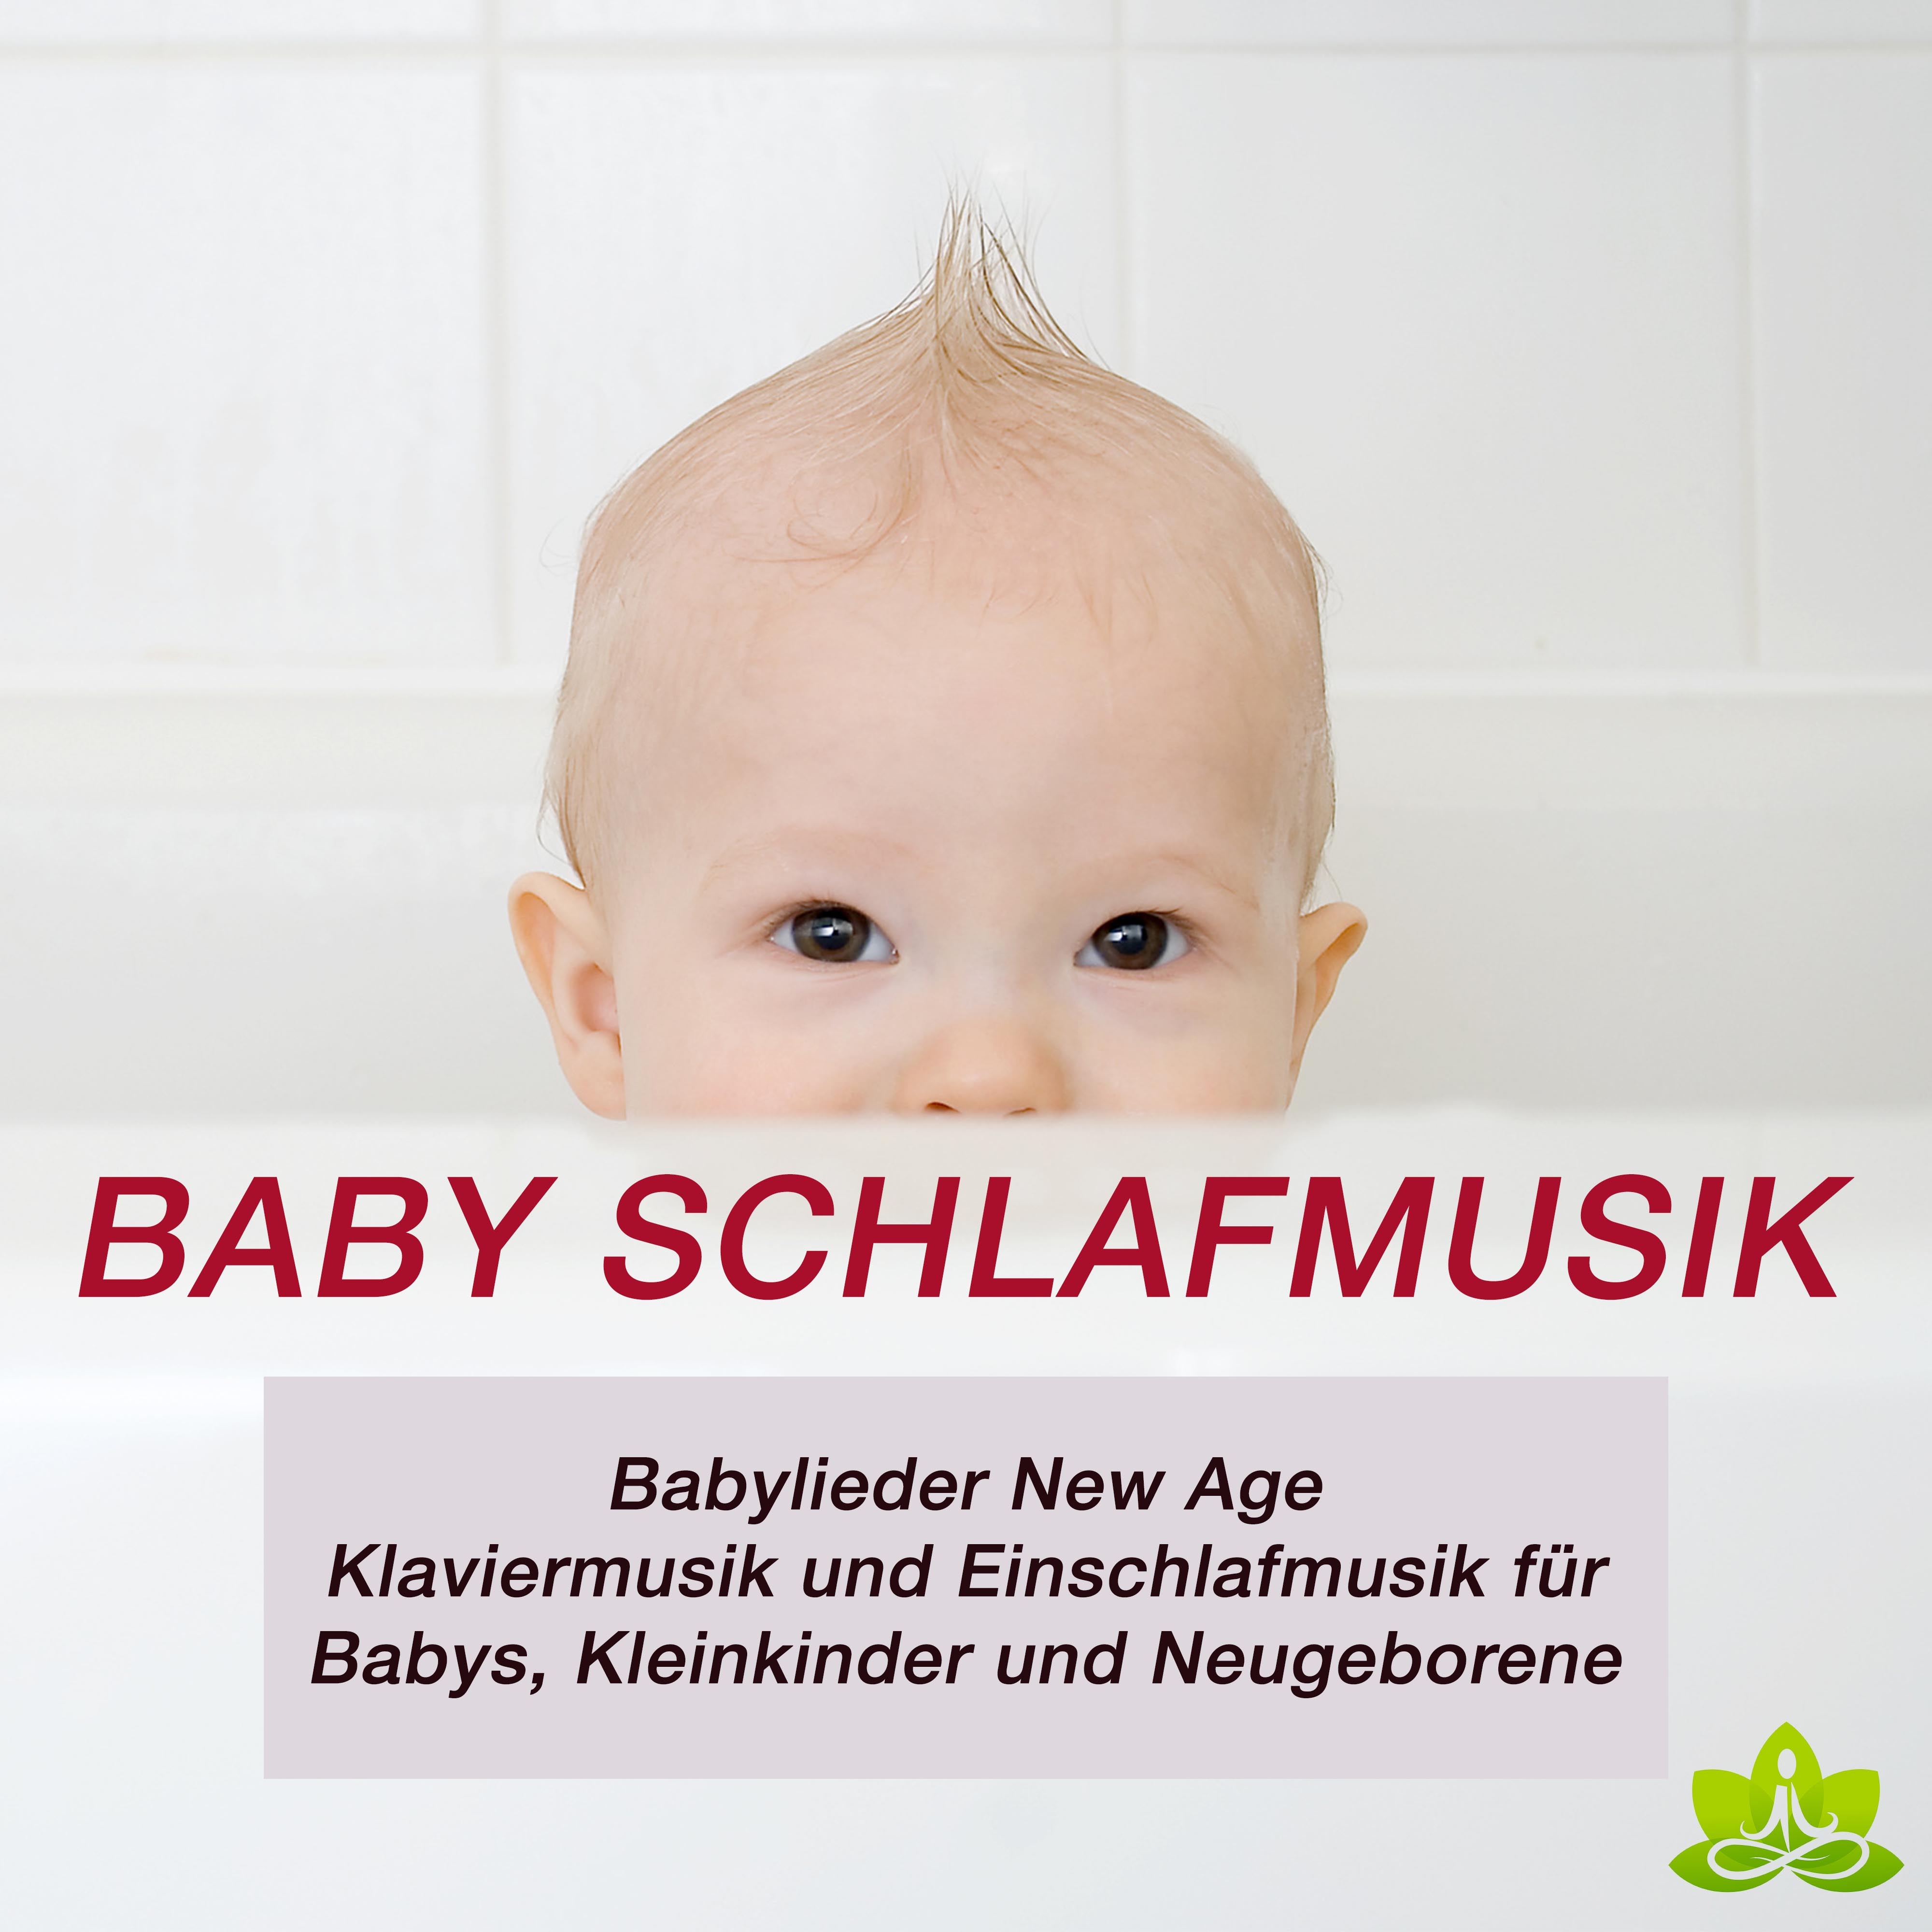 Baby Schlafmusik: Babylieder New Age, Klaviermusik und Einschlafmusik für Babys, Kleinkinder und Neugeborene